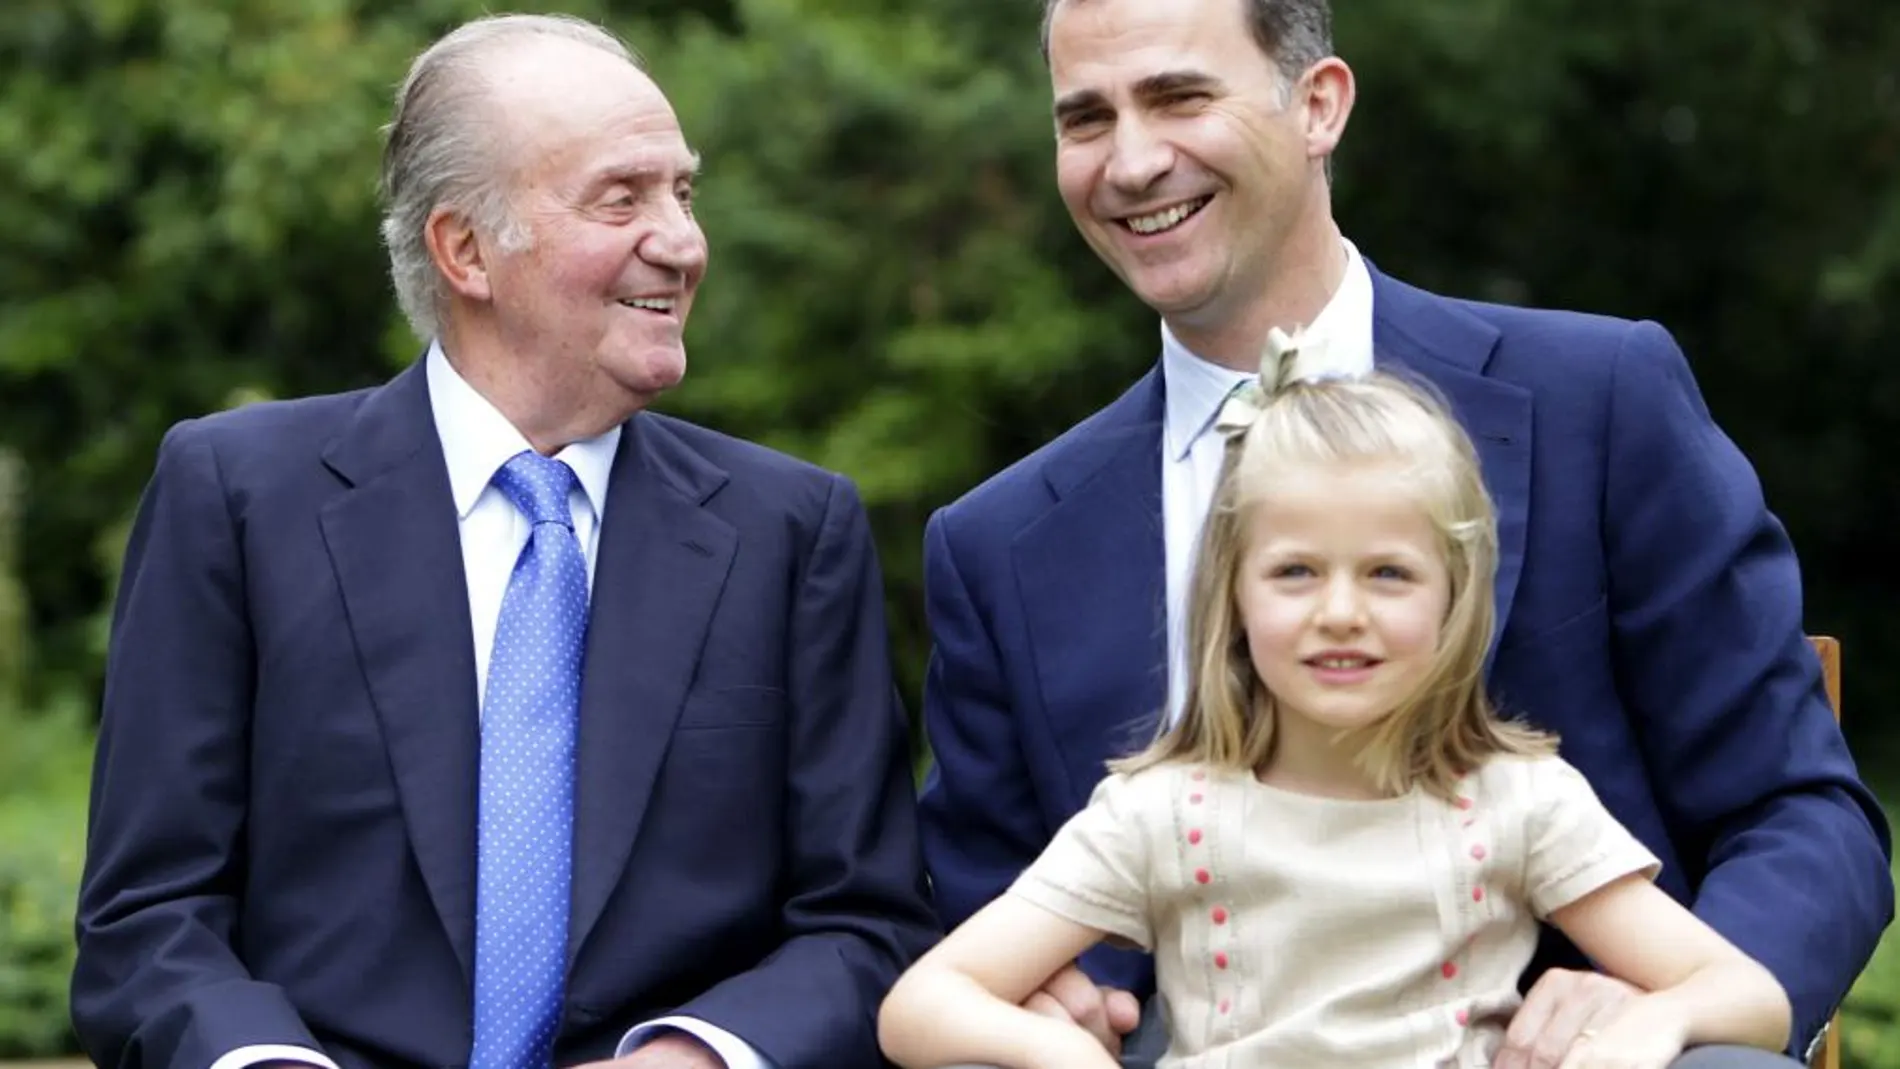 La Infanta Leonor se convertirá con casi 9 años en la princesa heredera más joven de Europa